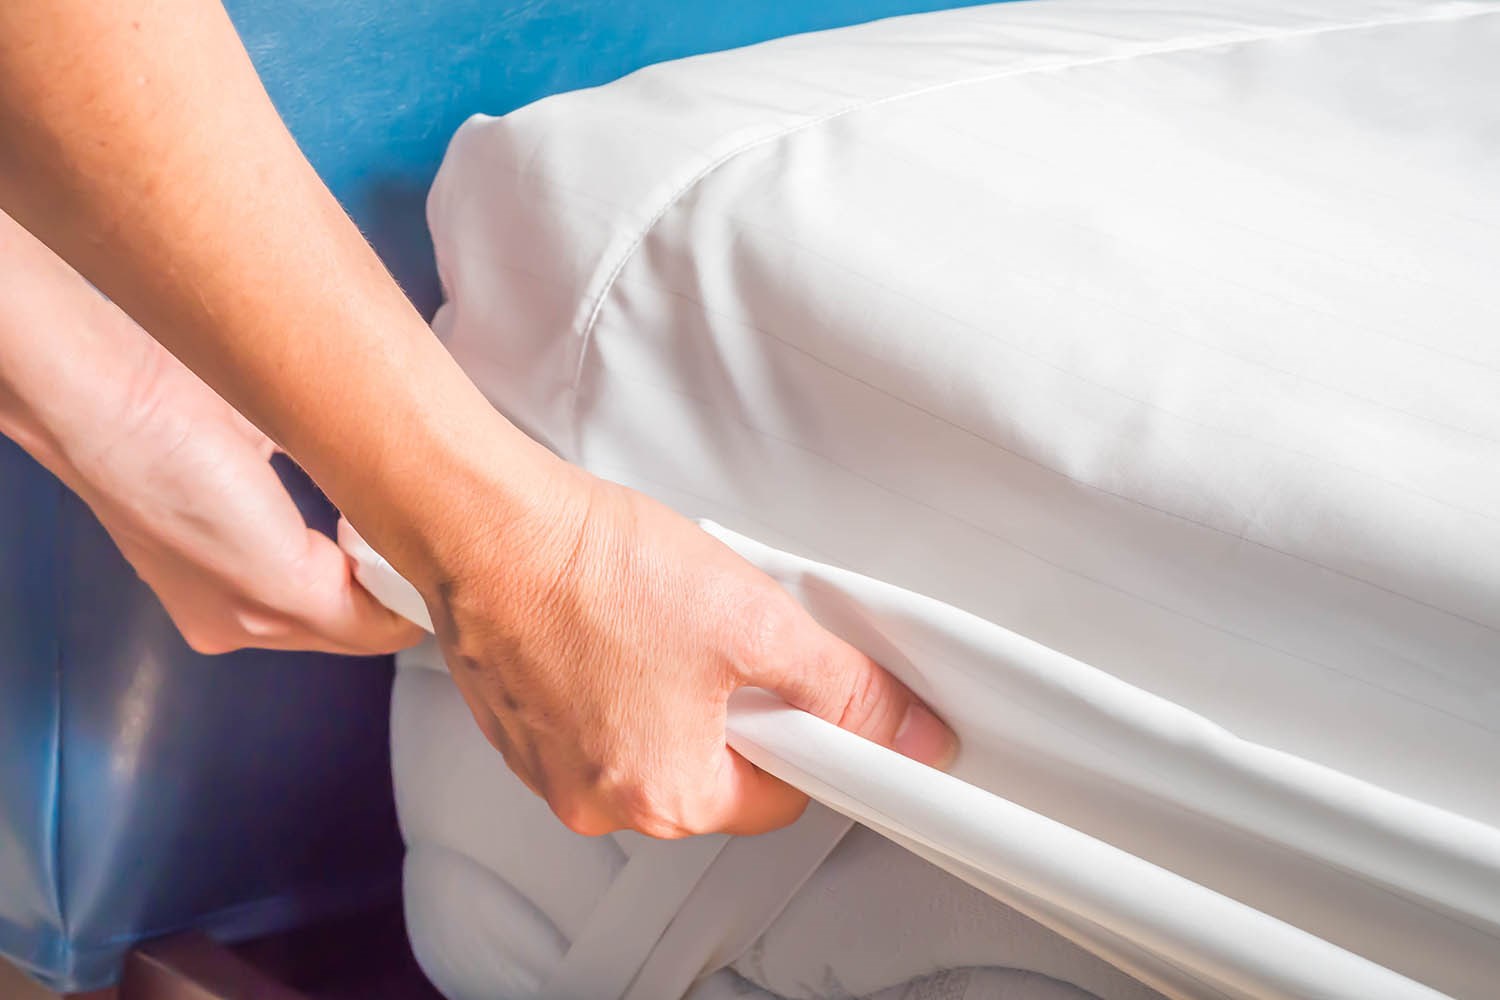 should you wash mattress protectors